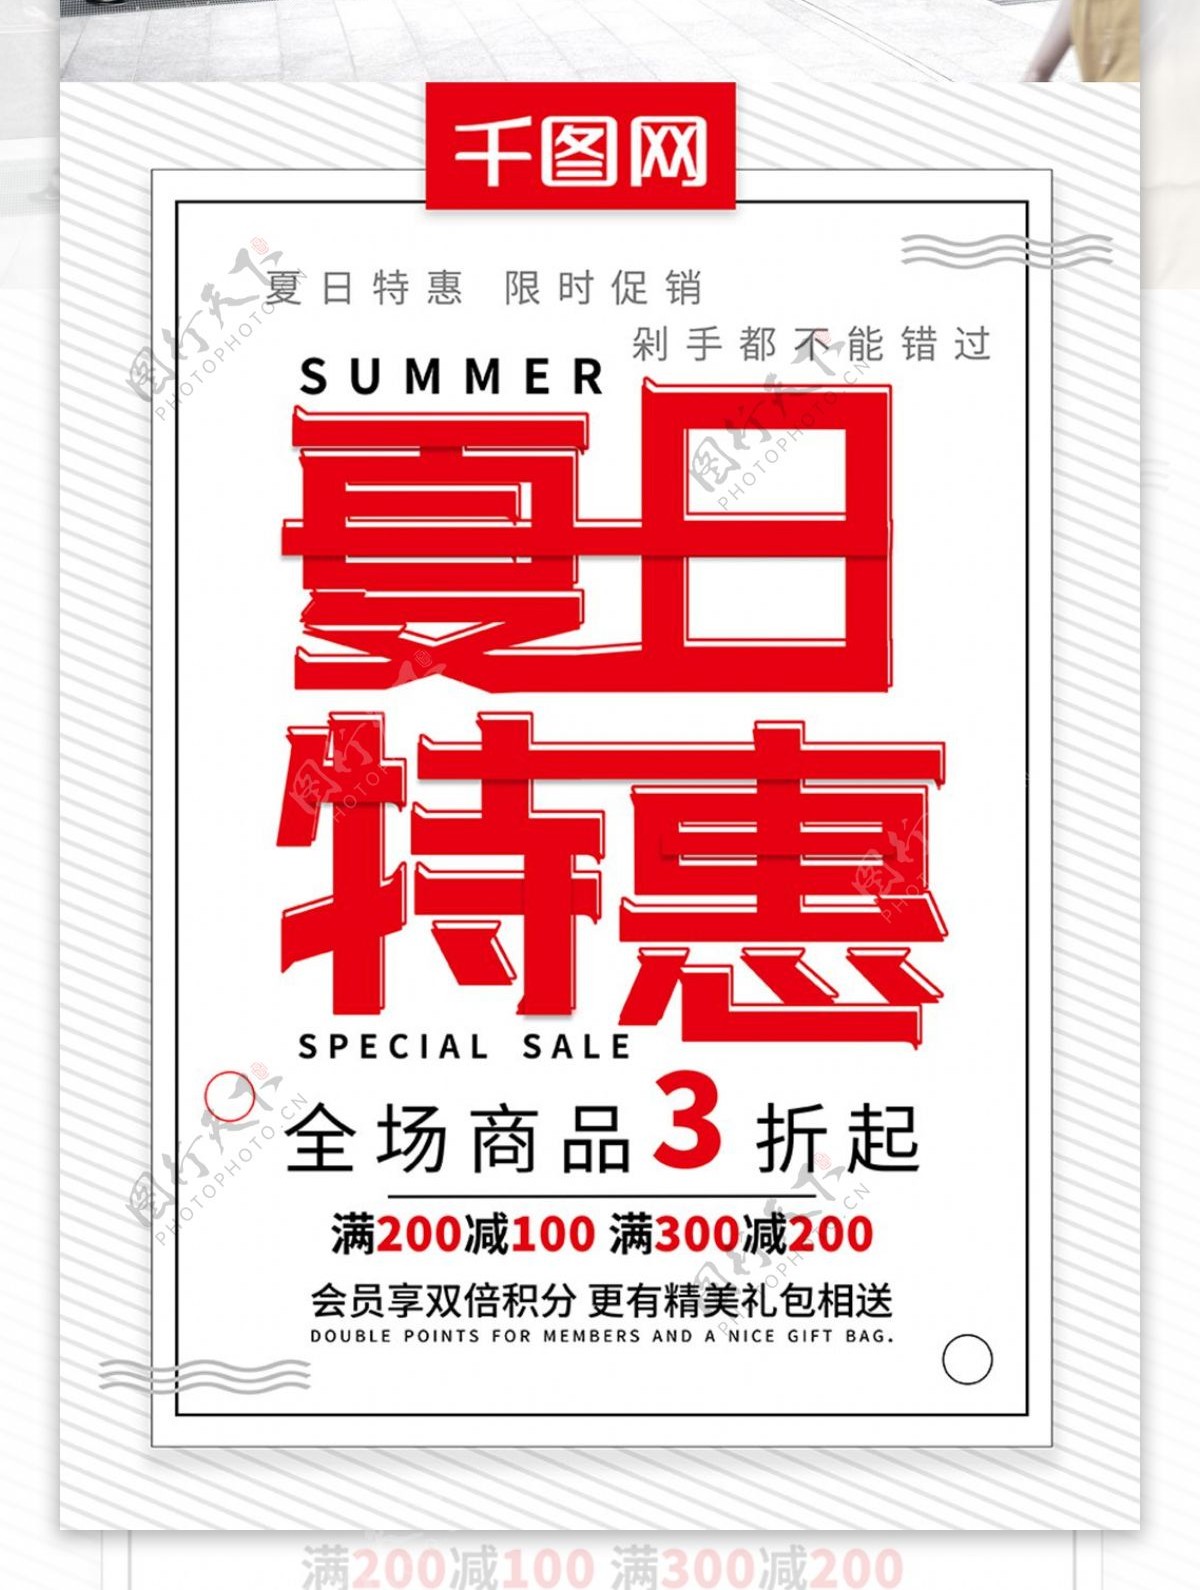 简约夏日特惠夏季促销宣传海报